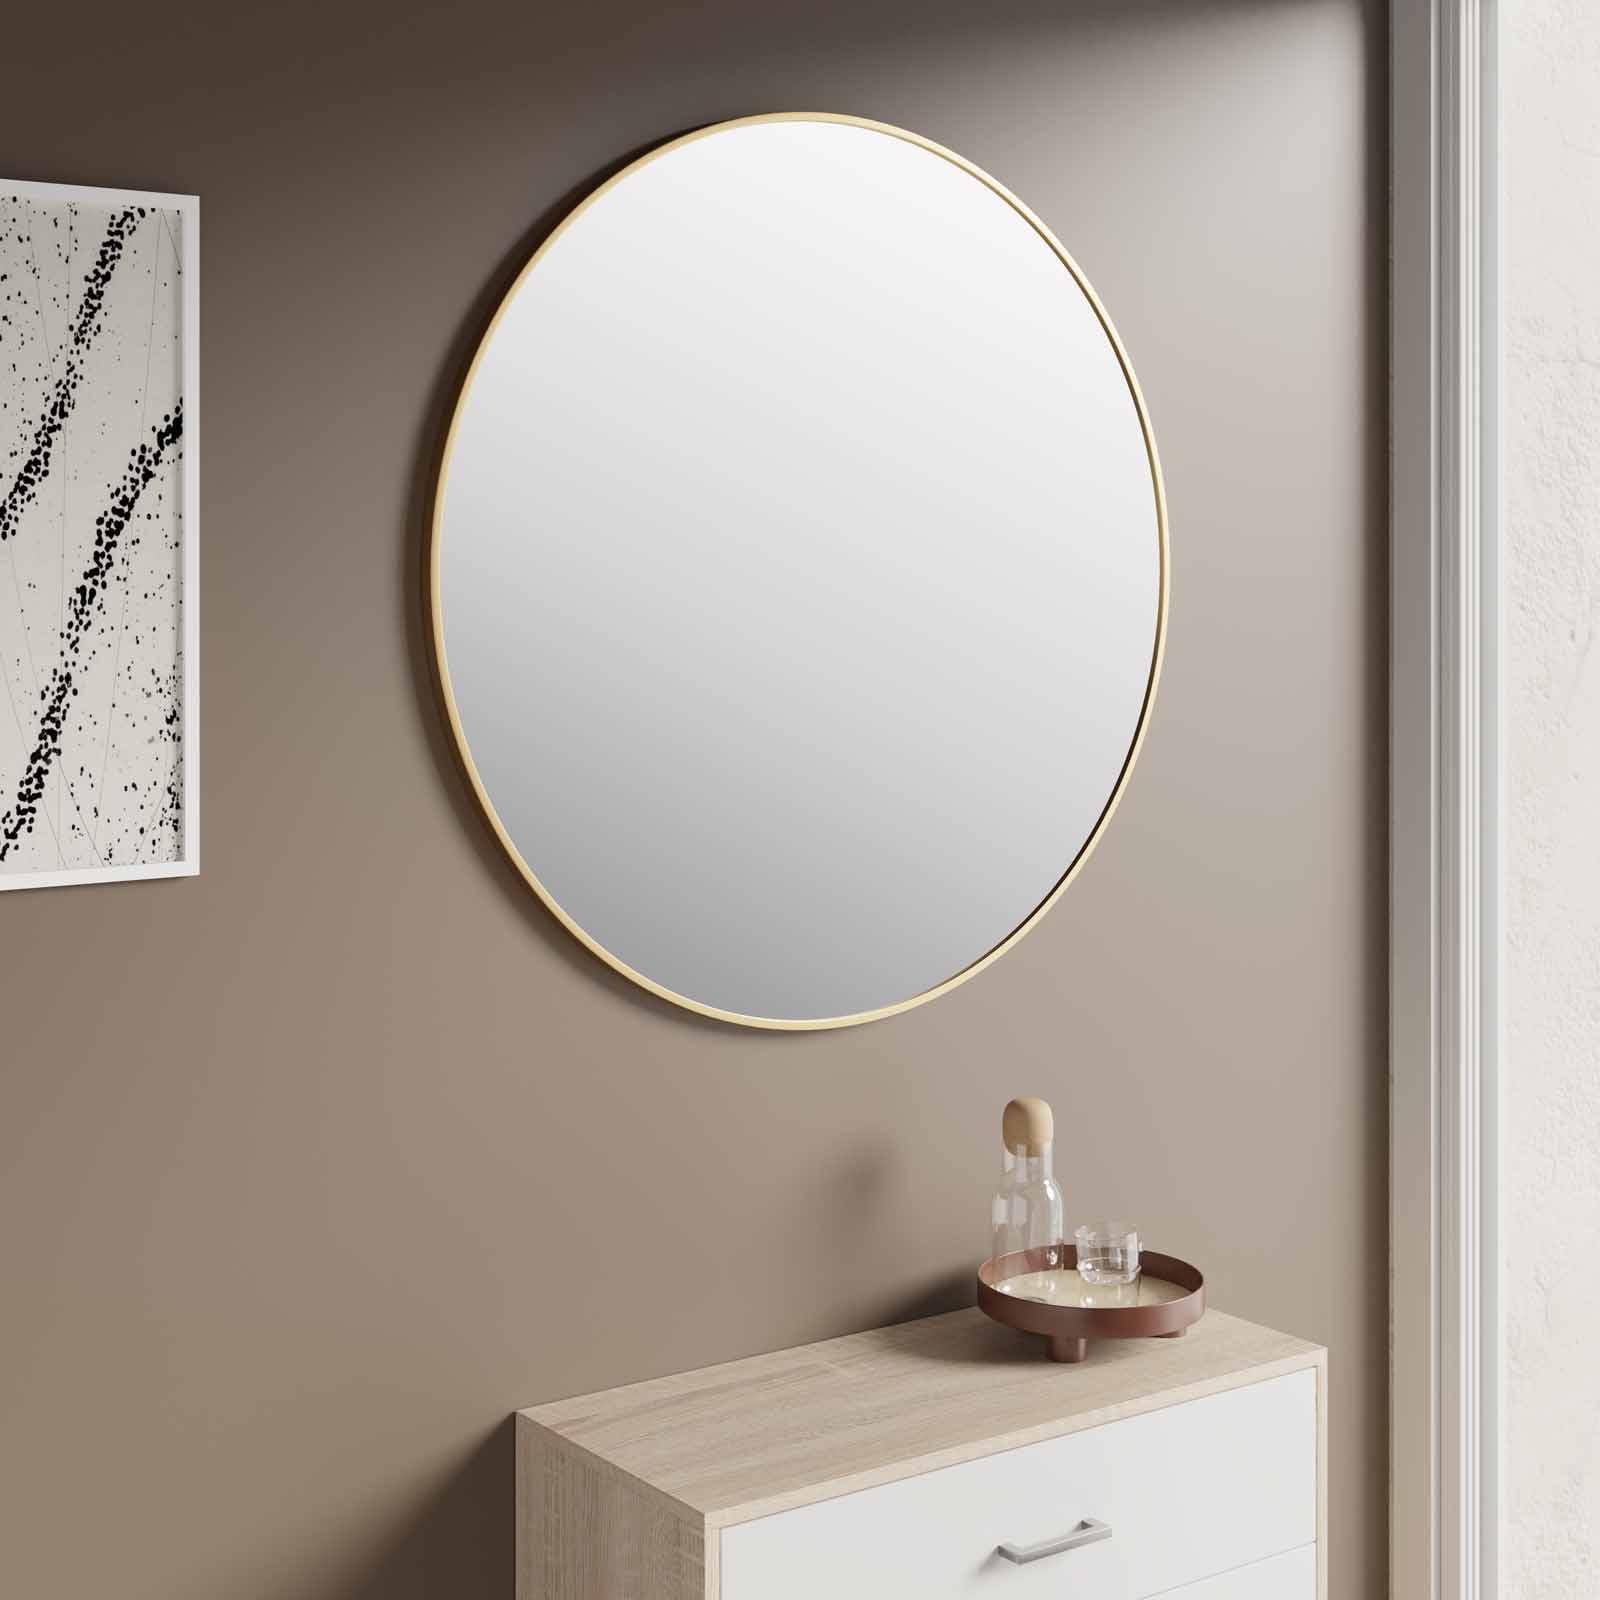 Specchio tondo da parete Ø60 cm finitura oro - Tadao